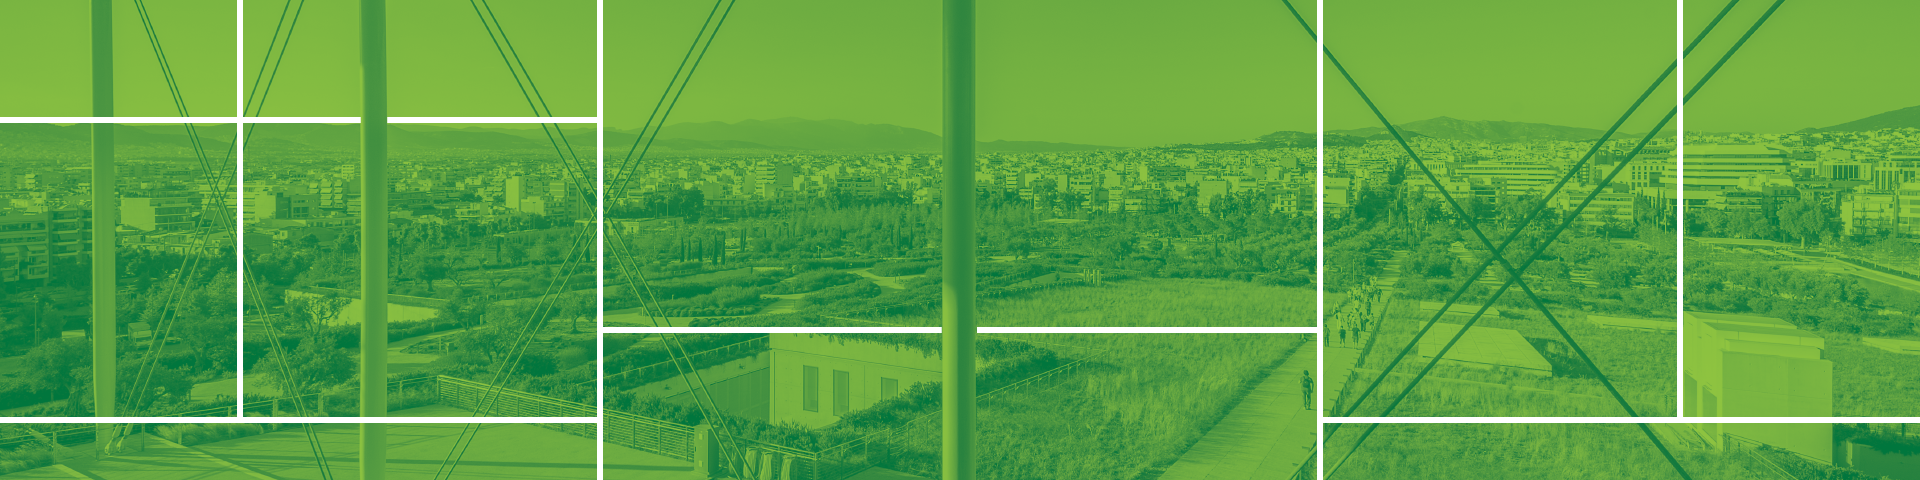 Συνεργασία ΚΠΙΣΝ & JA Greece: Μια πόλη, ένα οικοσύστημα & Εικονική επιχείρηση.   - Εικόνα